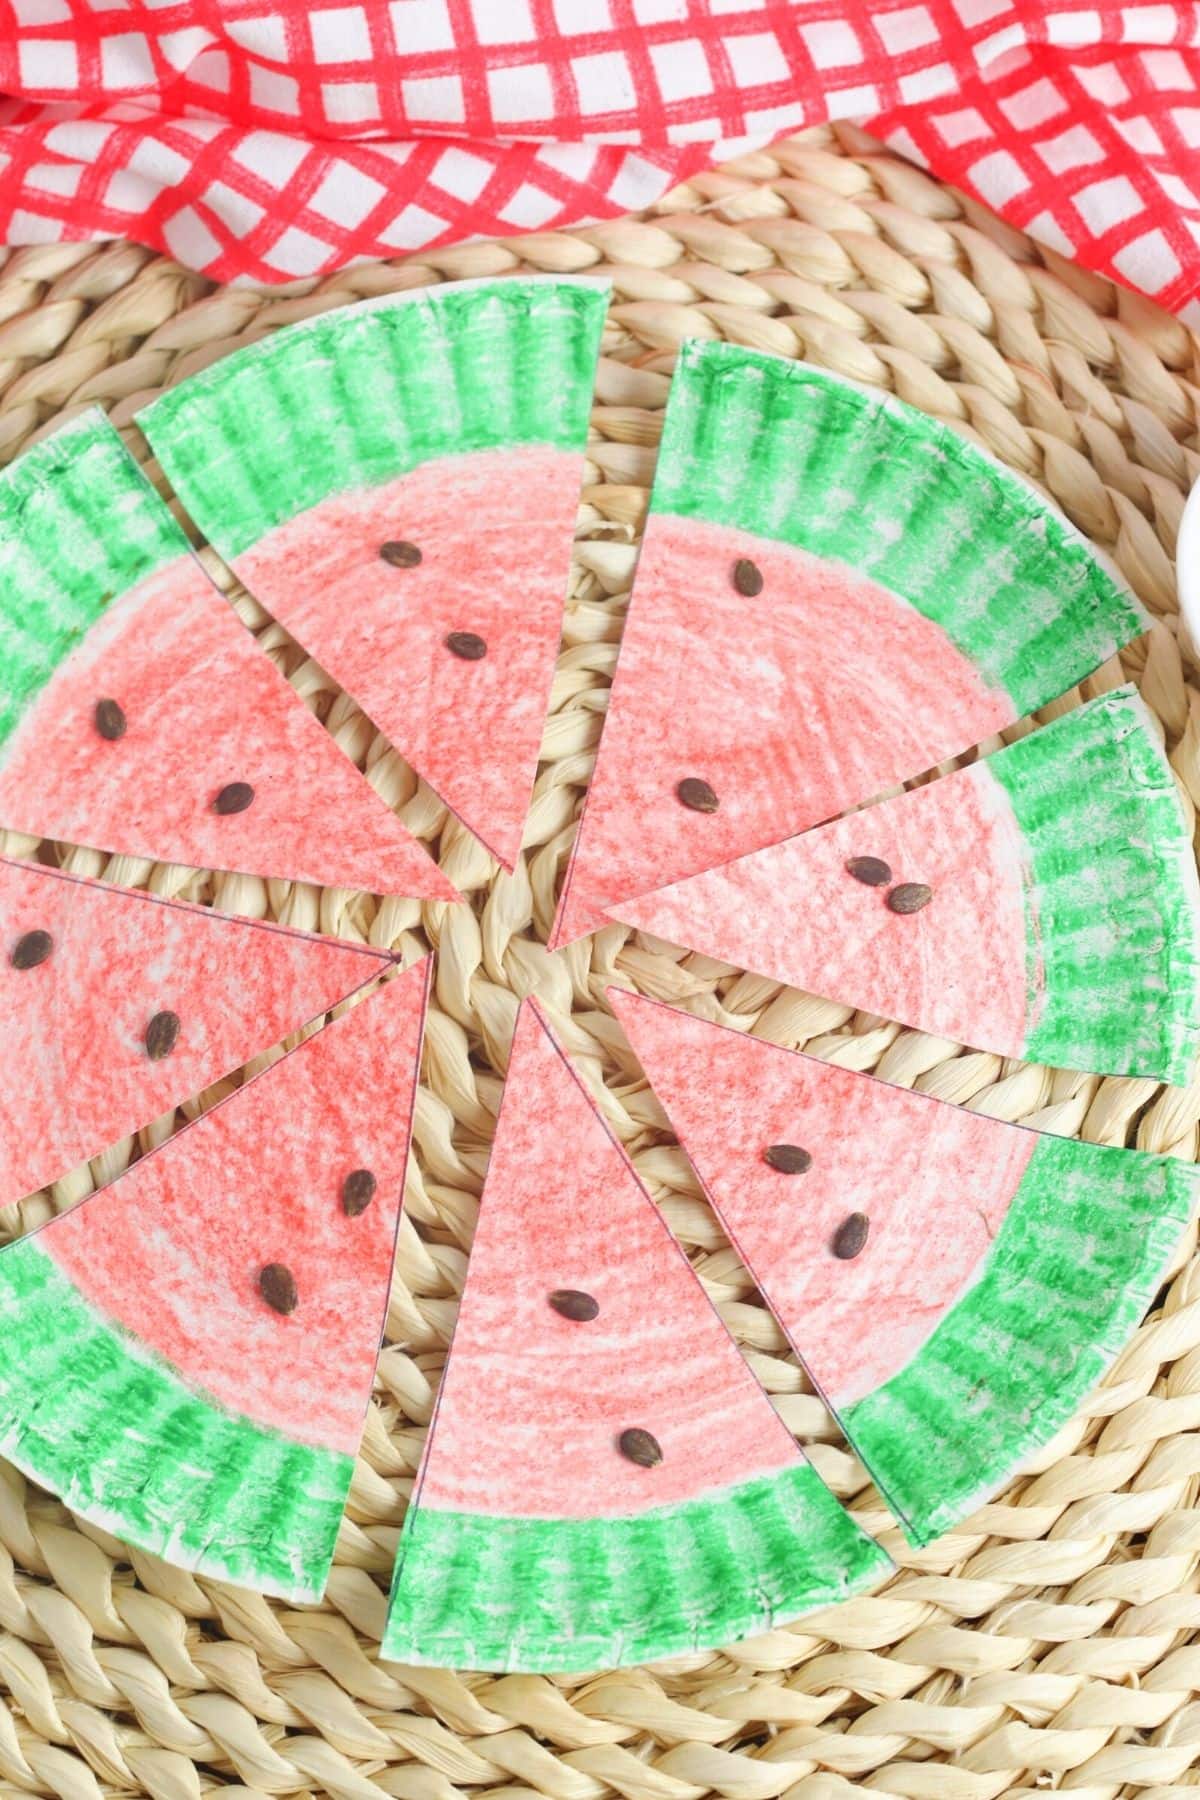 watermelon crafts